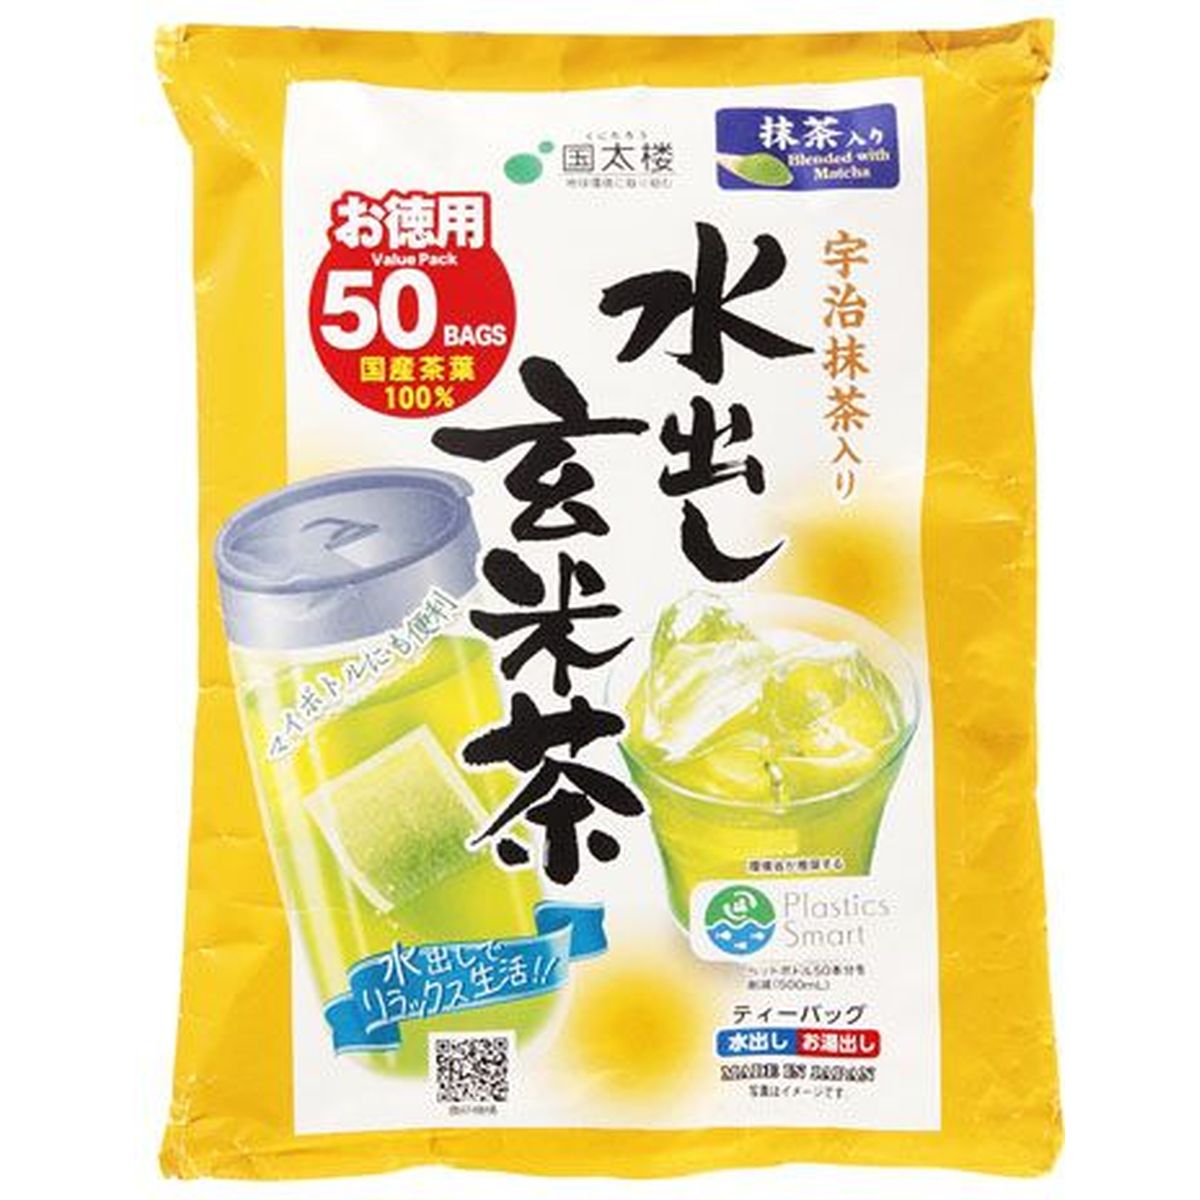 【12個入リ】国太楼 宇治抹茶入水出玄米茶TB3.5g 50袋